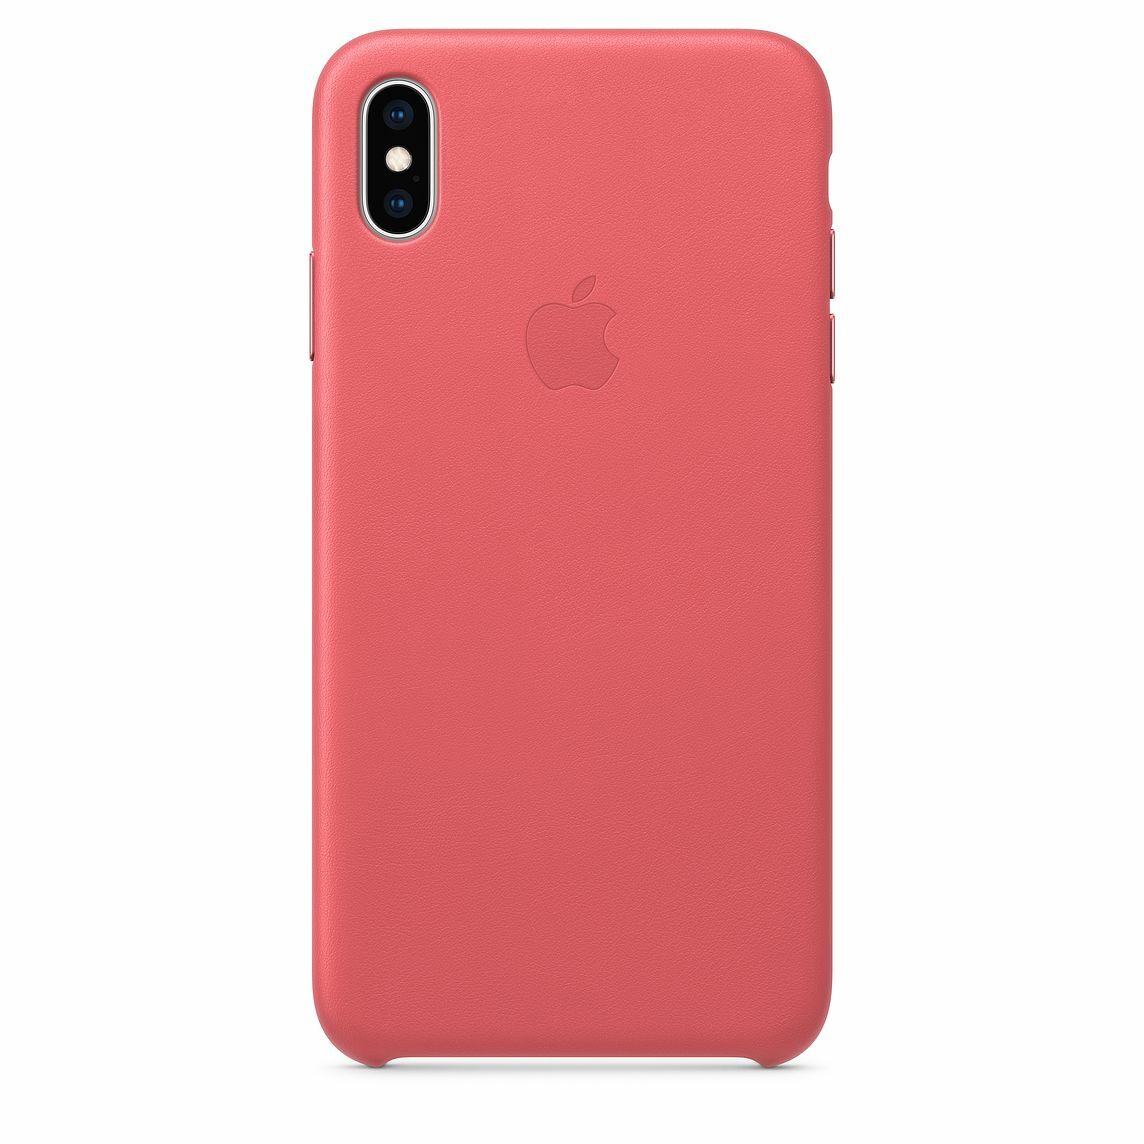 Apple Original iPhone XS Max Leather Case /